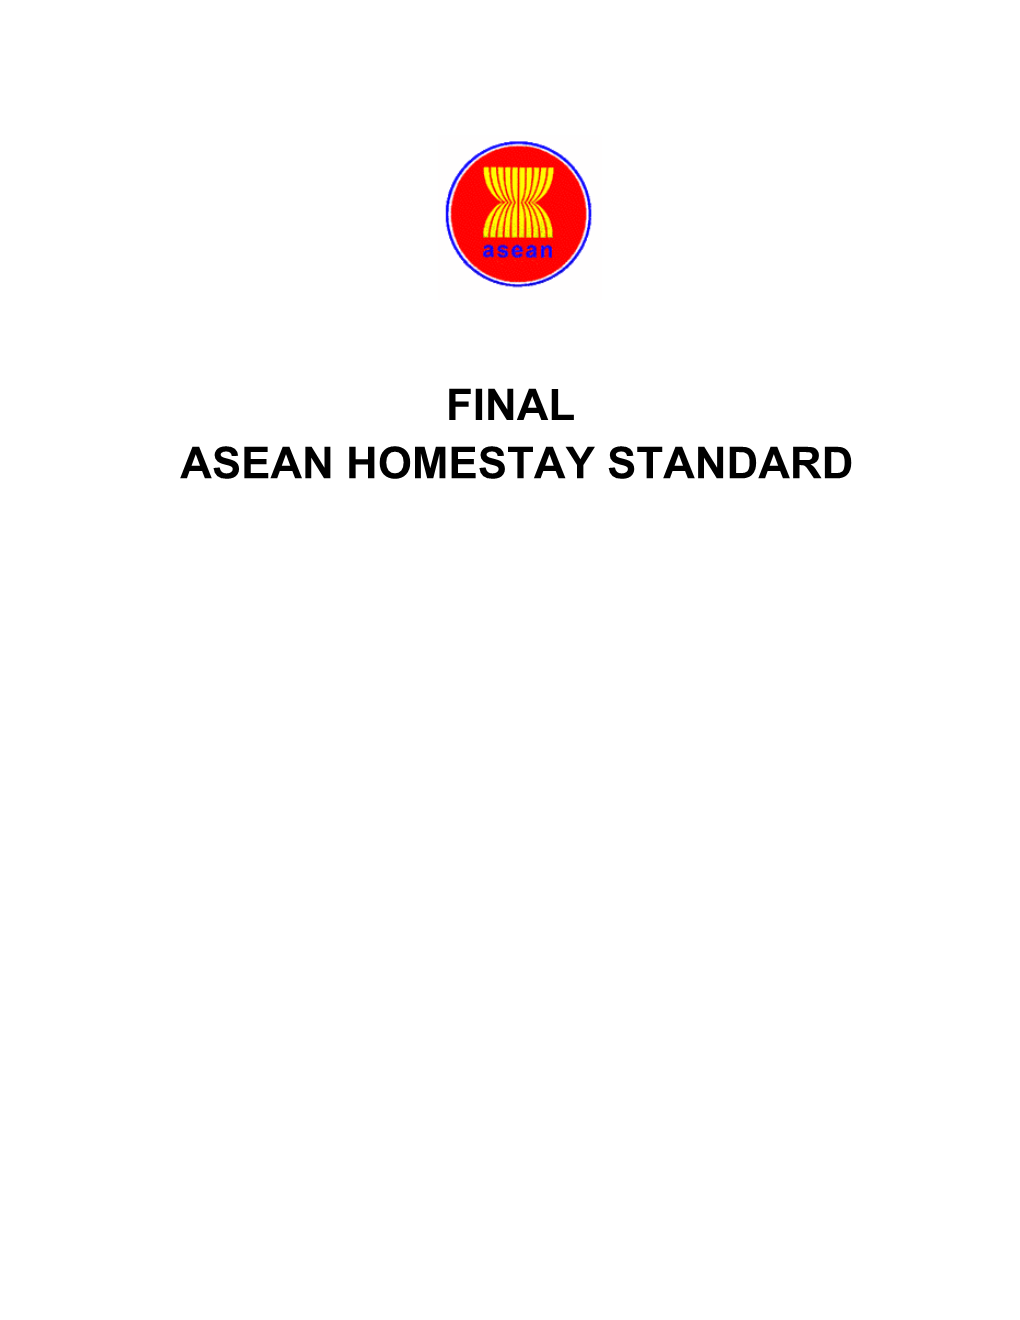 Final Asean Homestay Standard